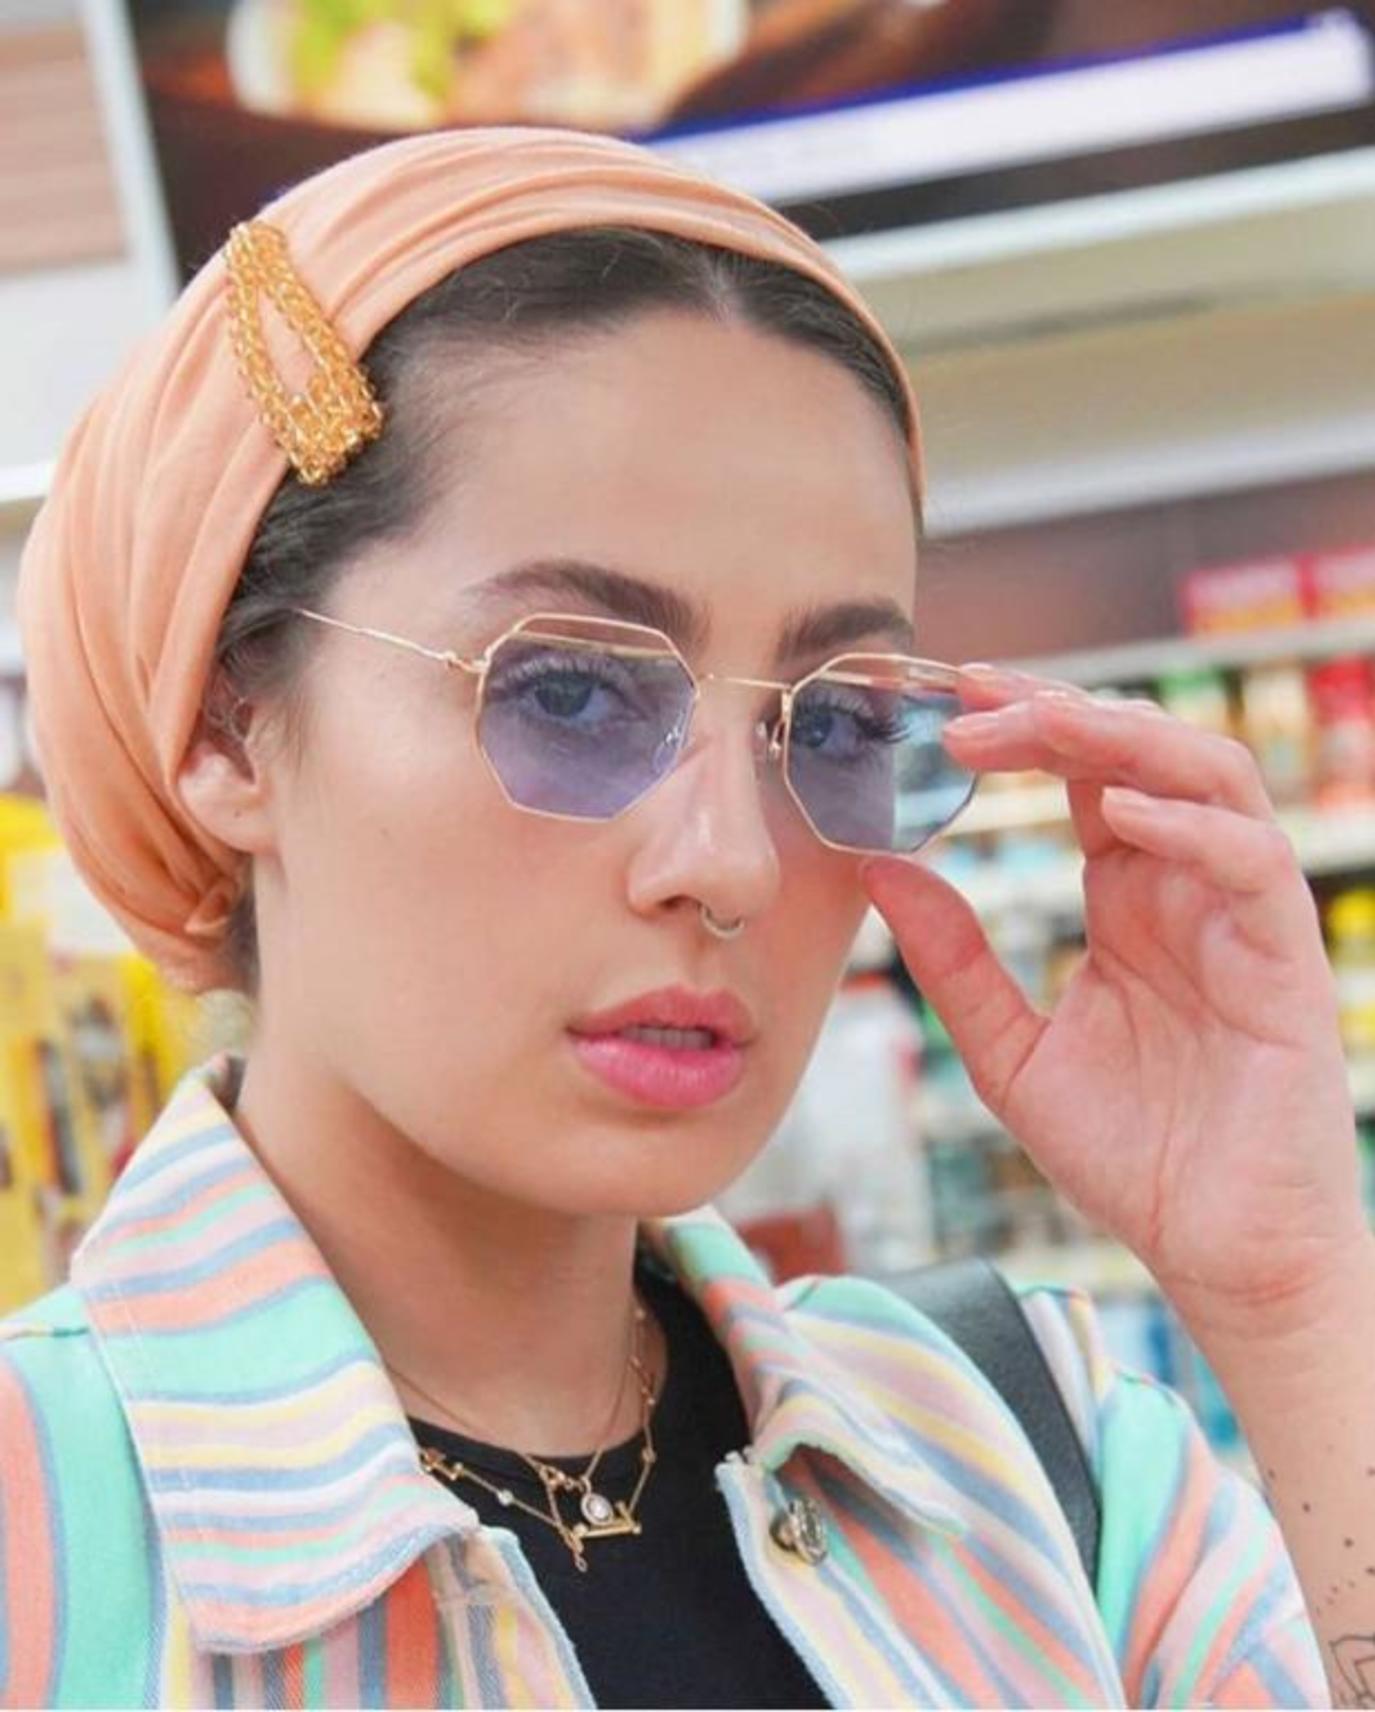 موضة الحجاب مع الاكسسورات المختلفة وطريقة تنسيقها كالفاشينيستا | مجلة سيدتي